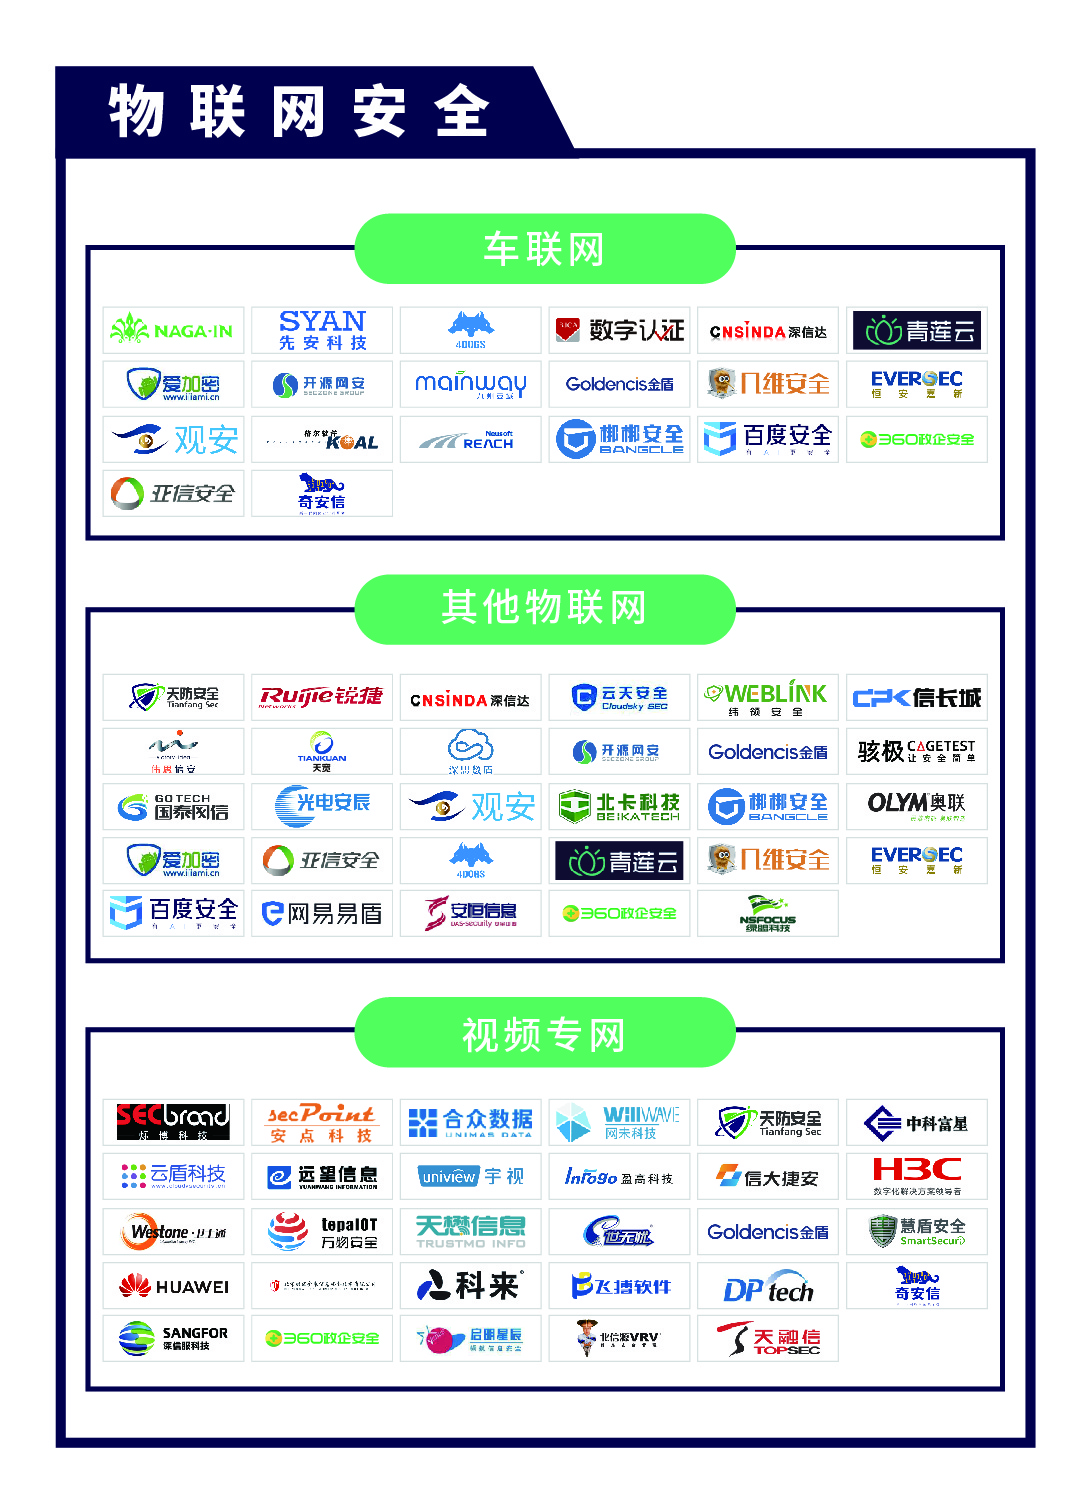 《CCSIP 2020中国网络安全产业全景图》正式发布 | FreeBuf咨询-第18张图片-网盾网络安全培训